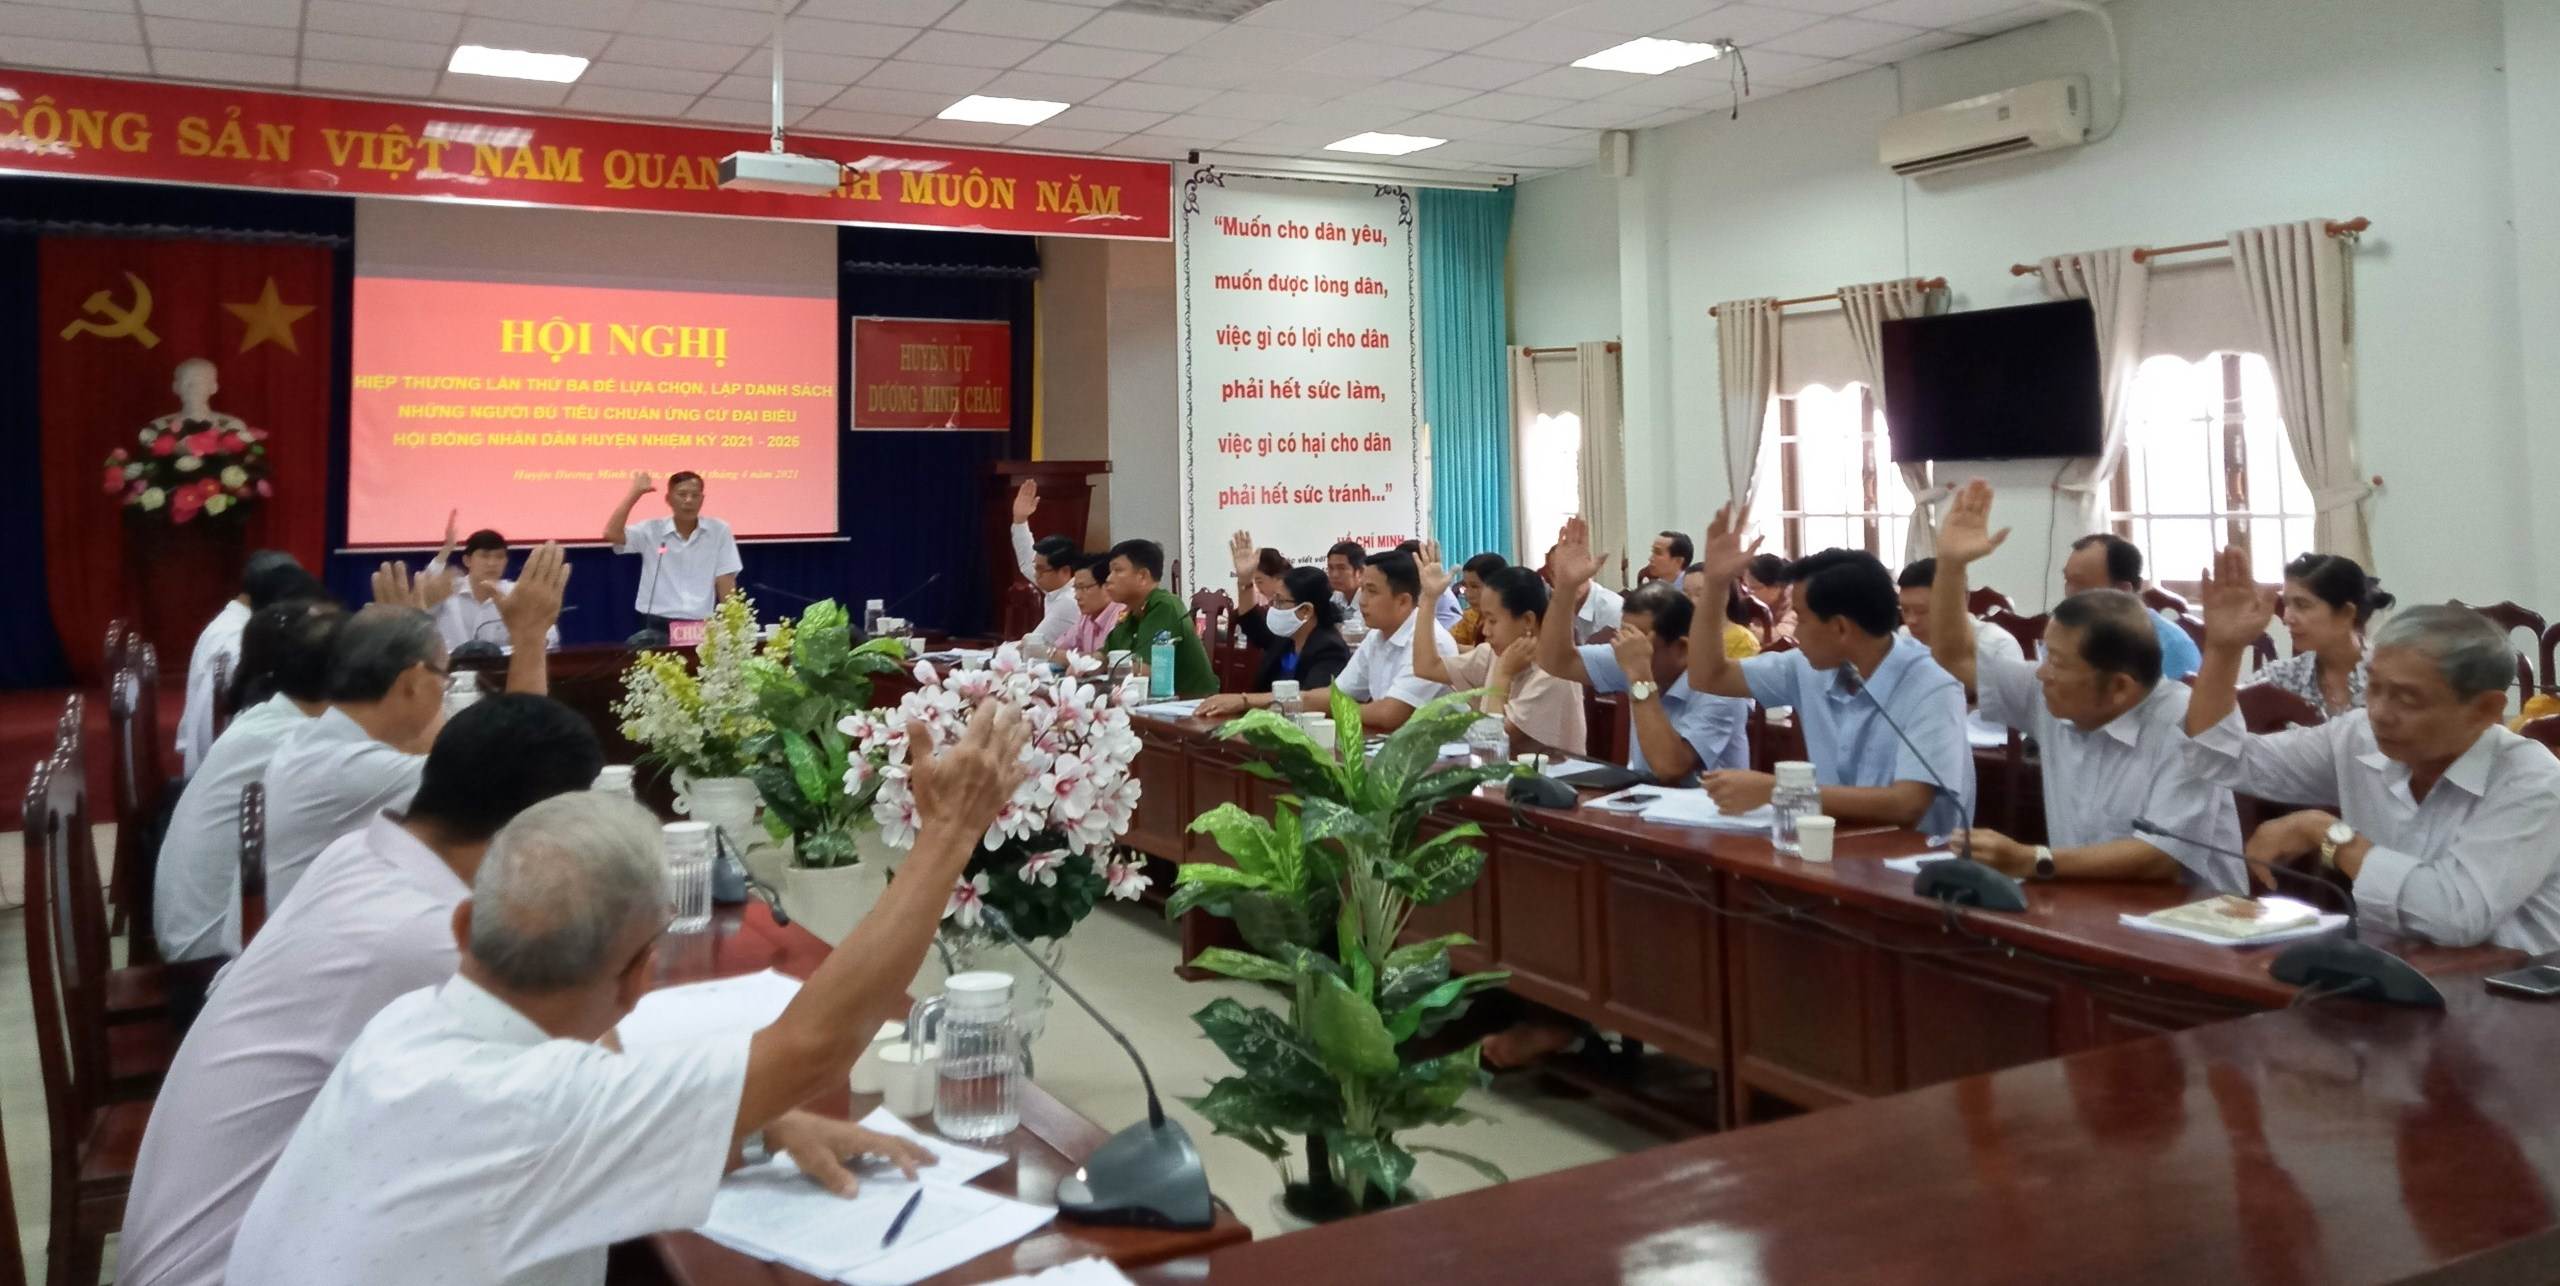 Huyện Dương Minh Châu: Hội nghị hiệp thương lần thứ ba thống nhất danh sách 52 ứng cử viên đủ tiêu chuẩn ứng cử đại biểu HĐND huyện nhiệm kỳ 2021 – 2026